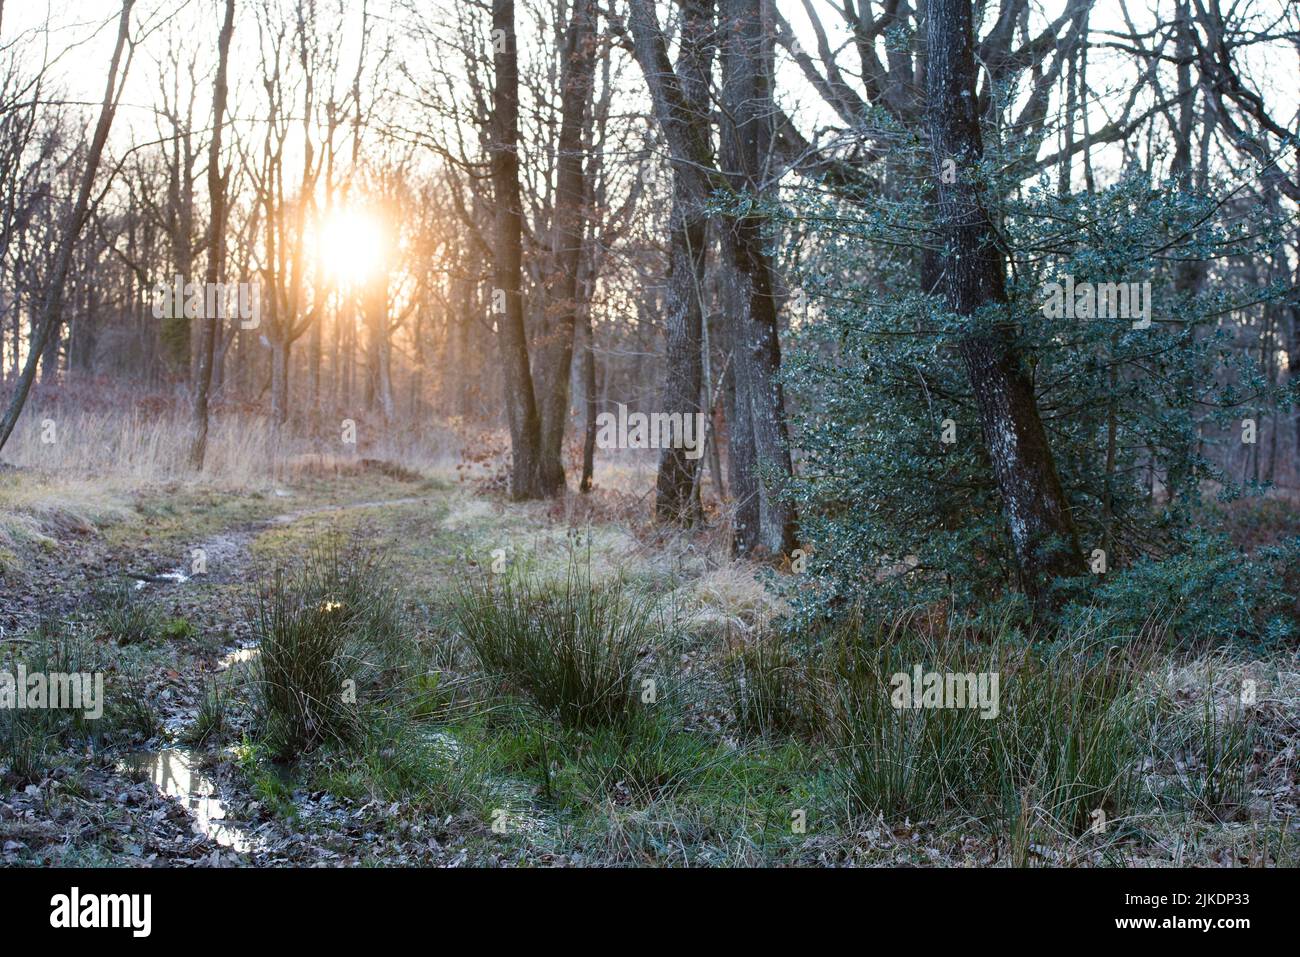 Camino del bosque al atardecer, Selva de Rambouillet, Parque Natural Regional Haute Vallée de Chevreuse, departamento de Yvelines, región Isla de Francia, Francia, Foto de stock